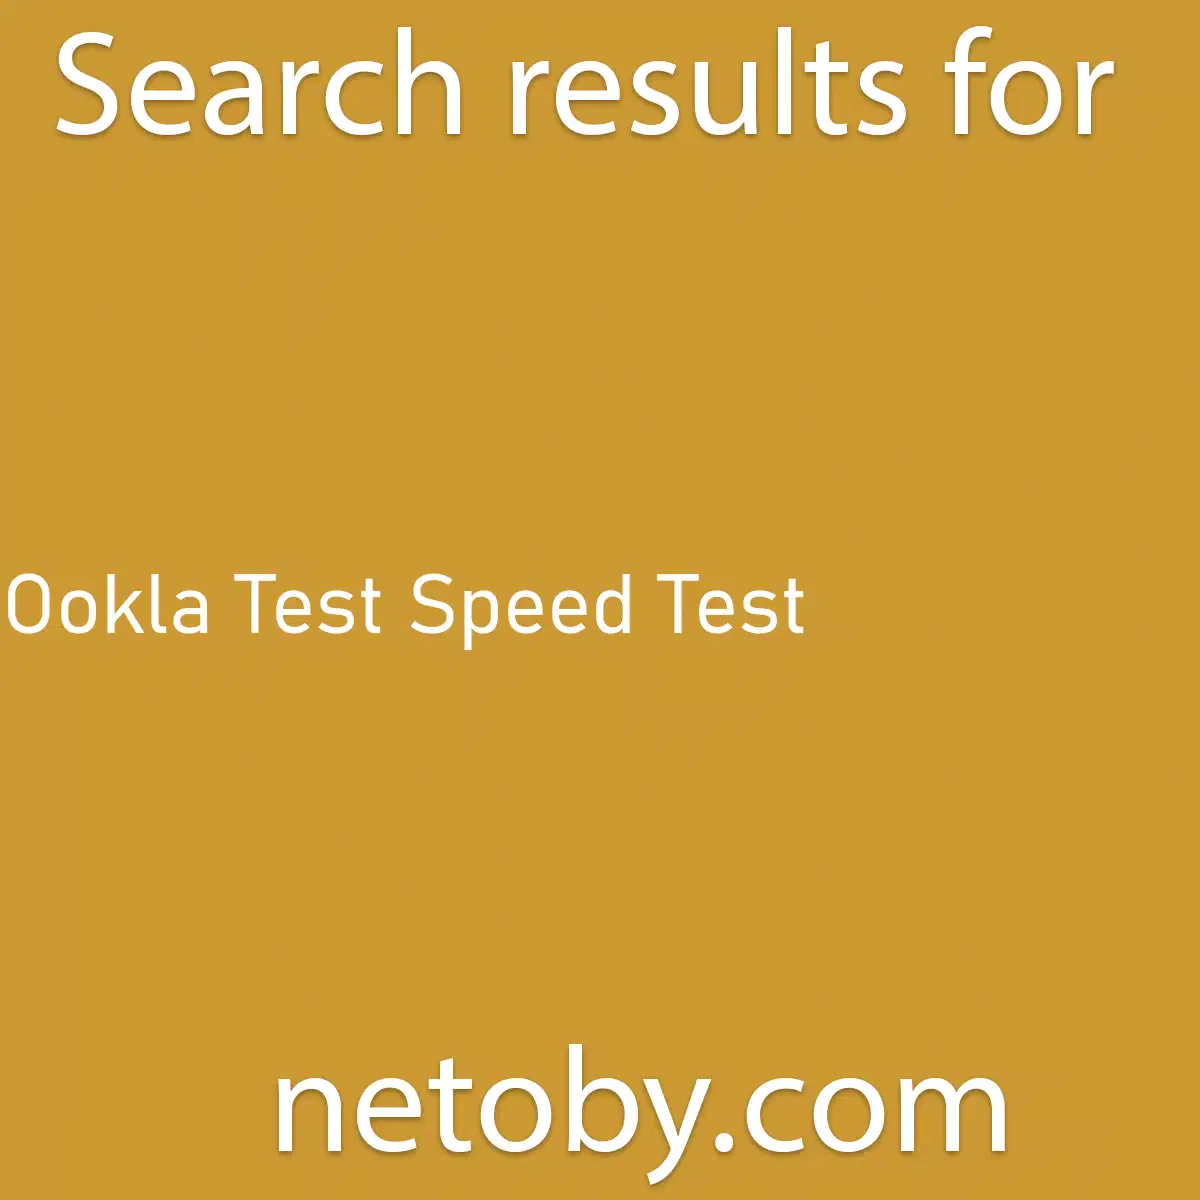 ﻿Ookla Test Speed Test